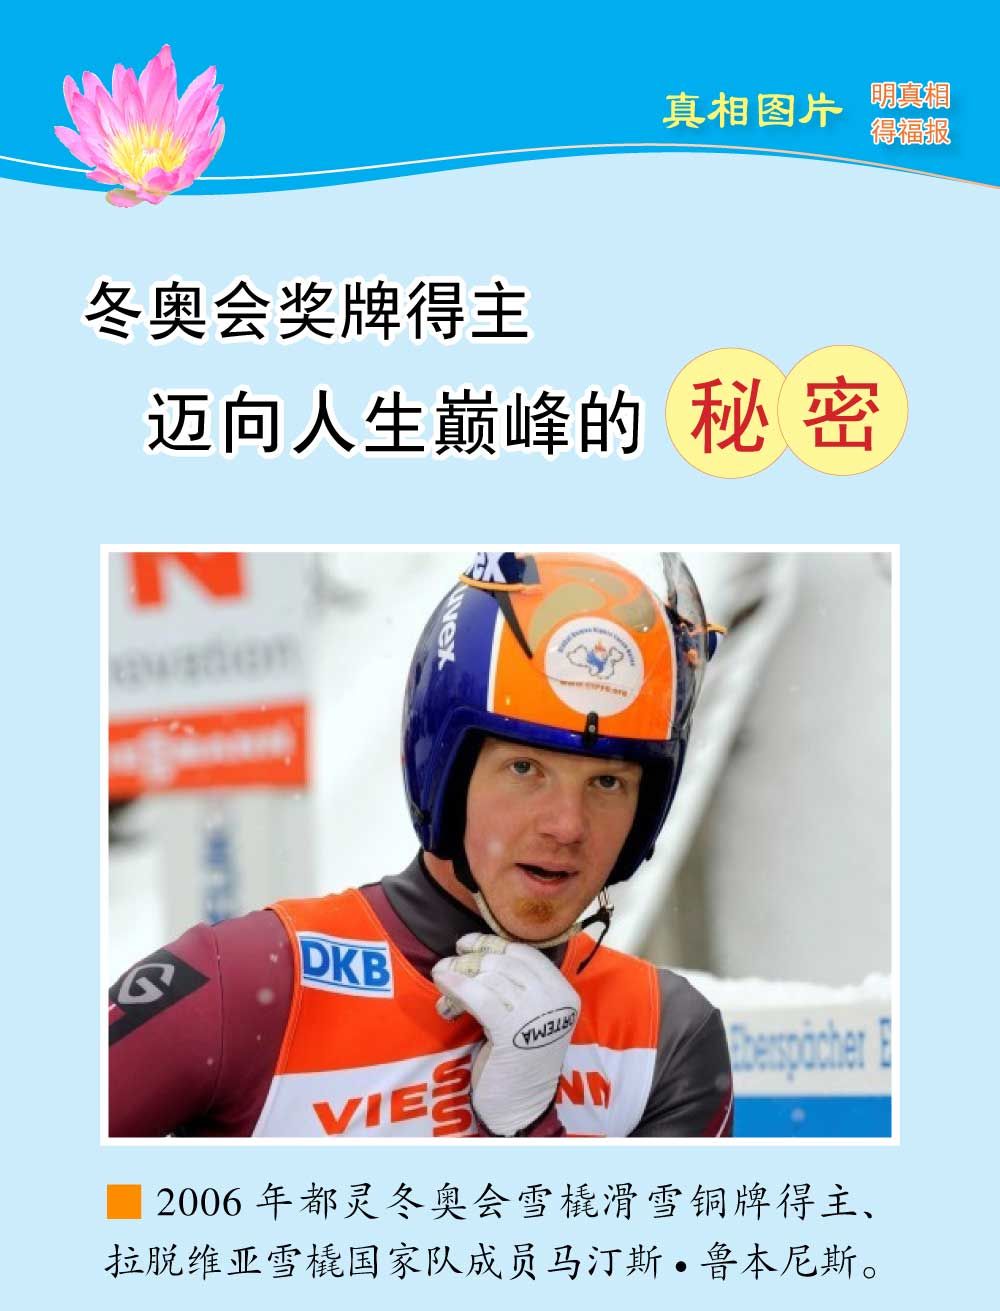 (2018年10月30日) 手机图片版：冬奥会奖牌得主迈向人生巅峰的秘密